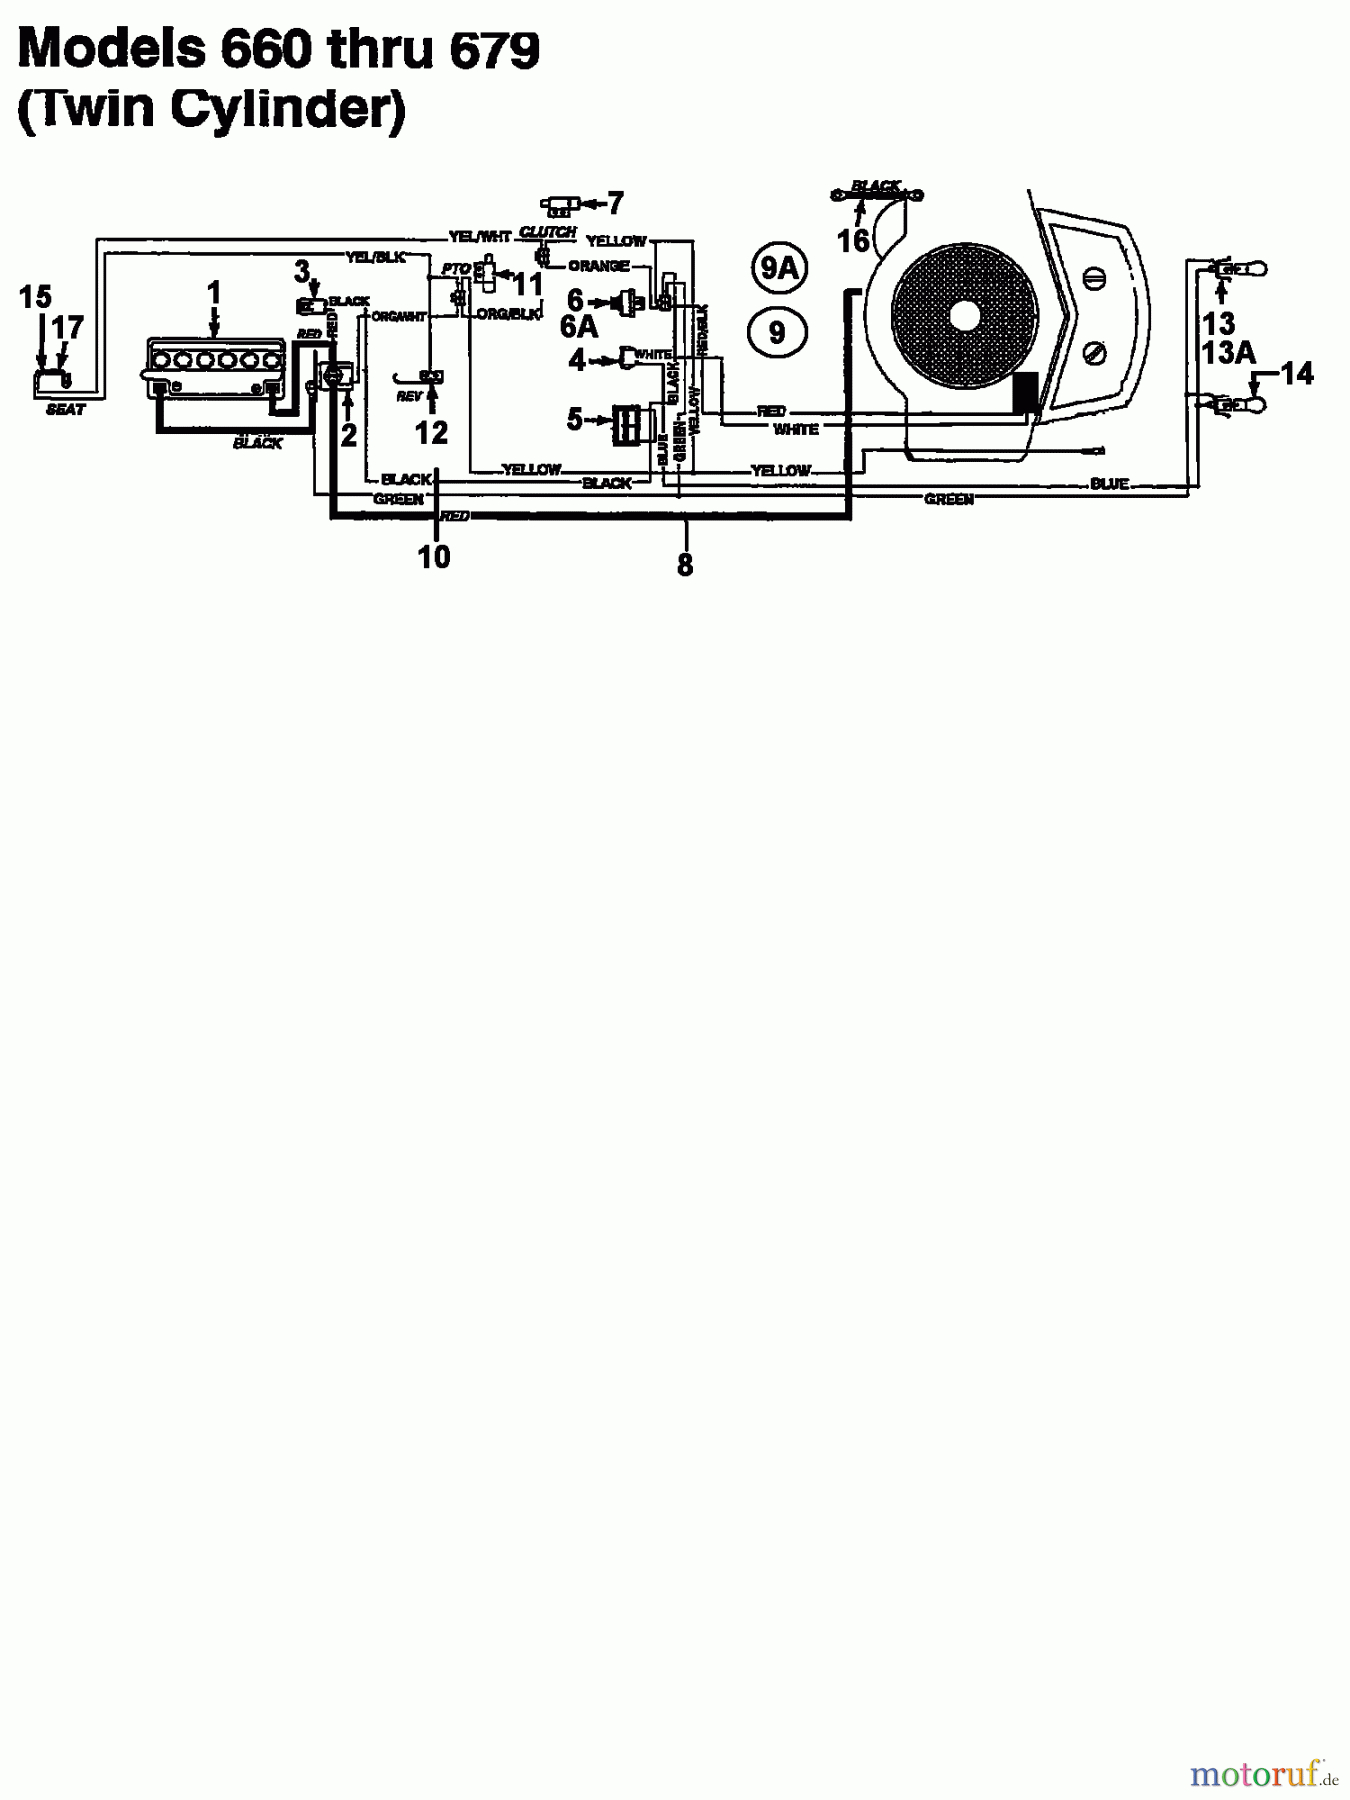  Columbia Rasentraktoren 112/960 N 133K670F626  (1993) Schaltplan 2 Zylinder